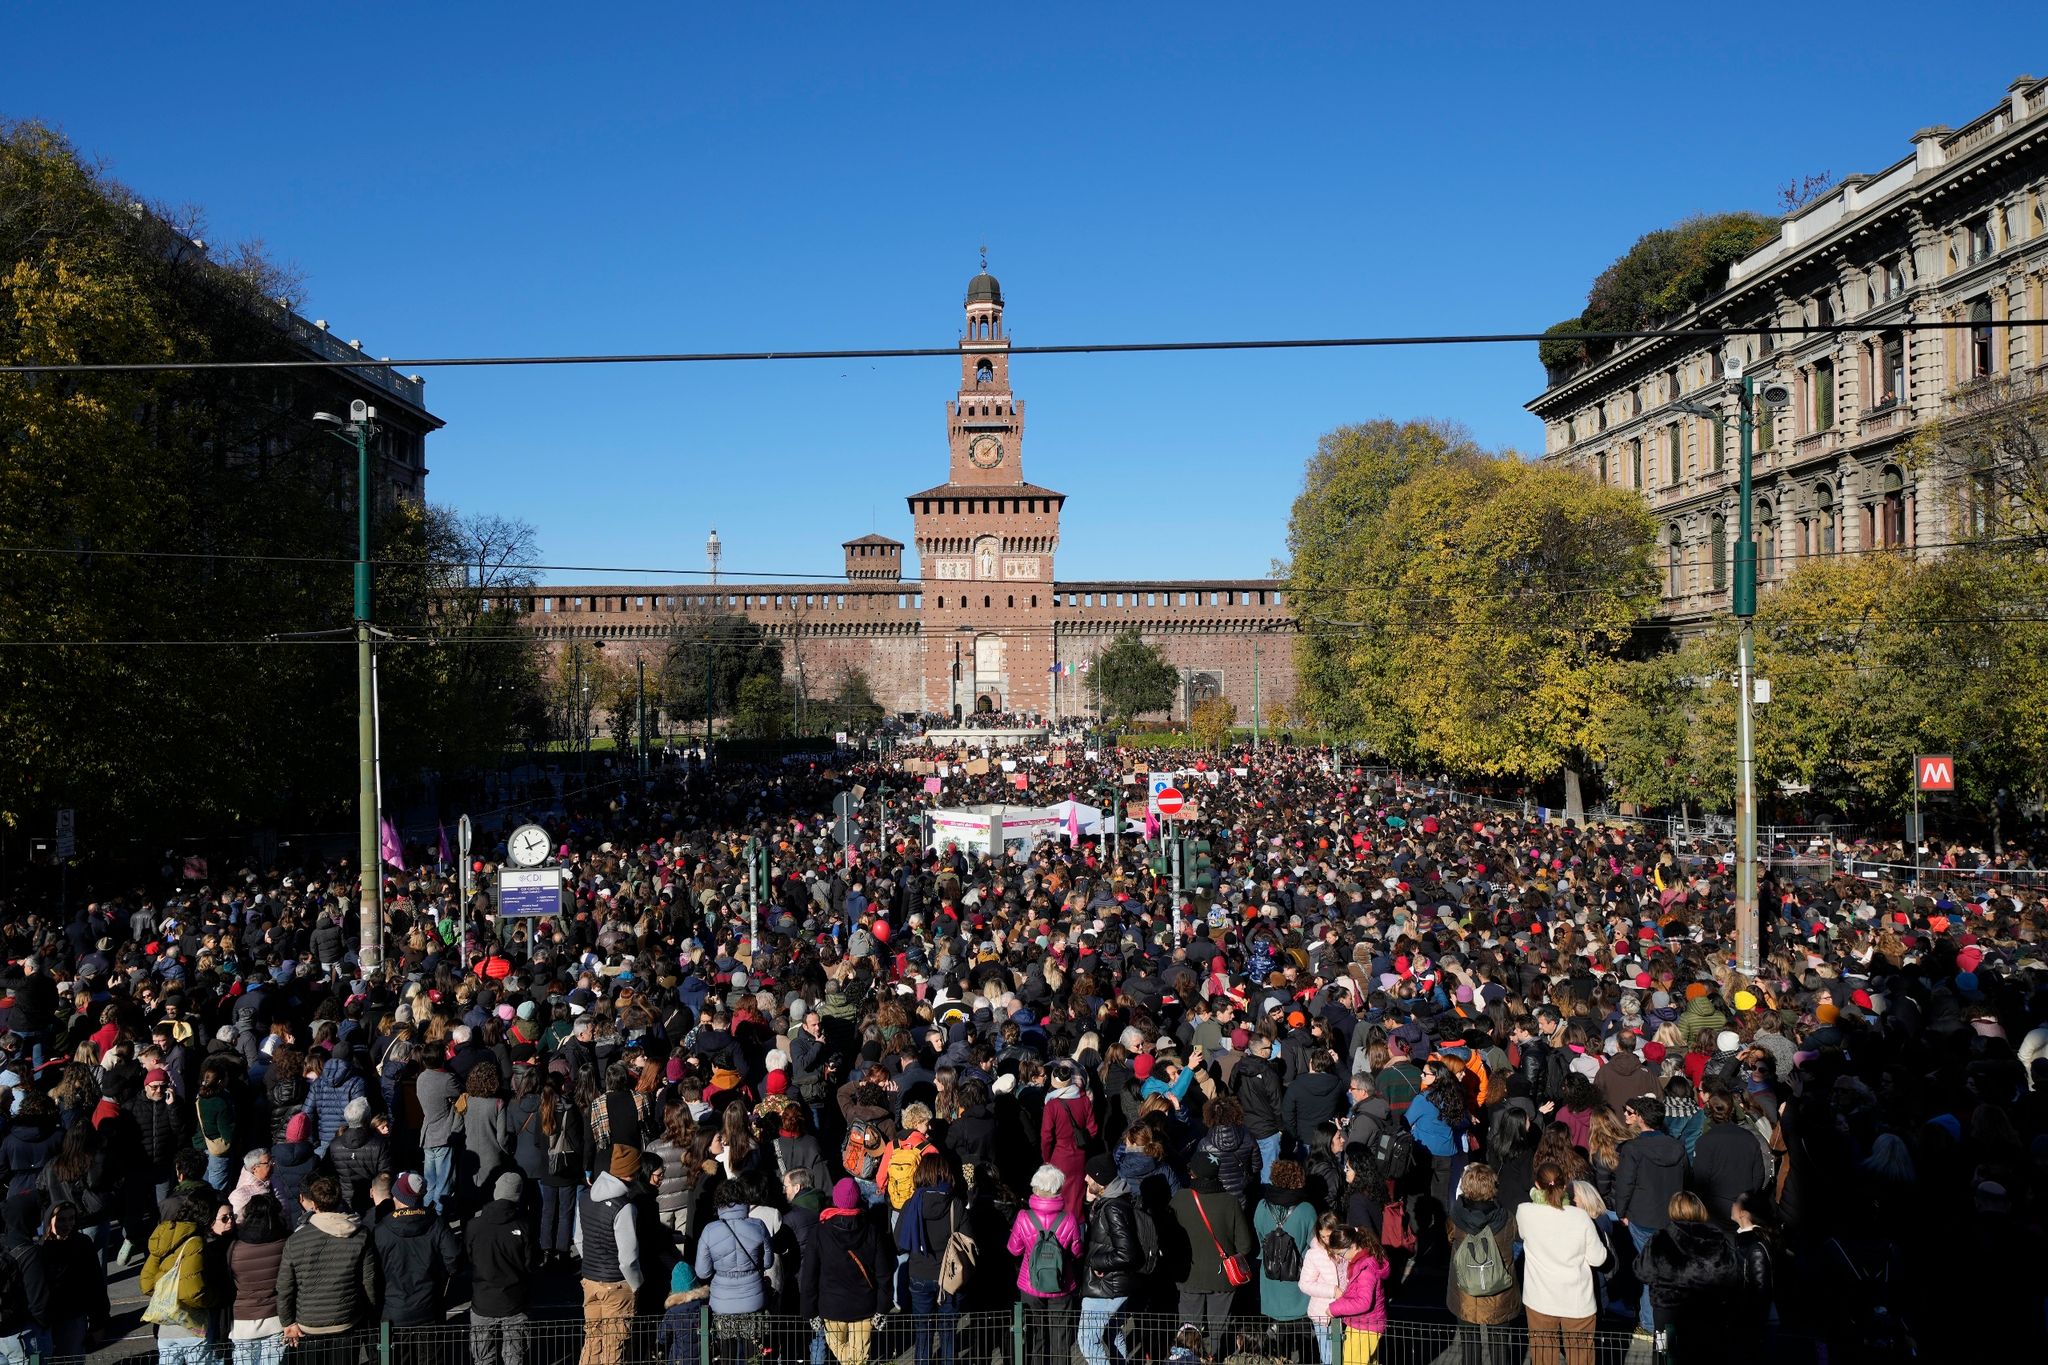 Deutschland liefert mutmaßlichen Mörder an Italien aus